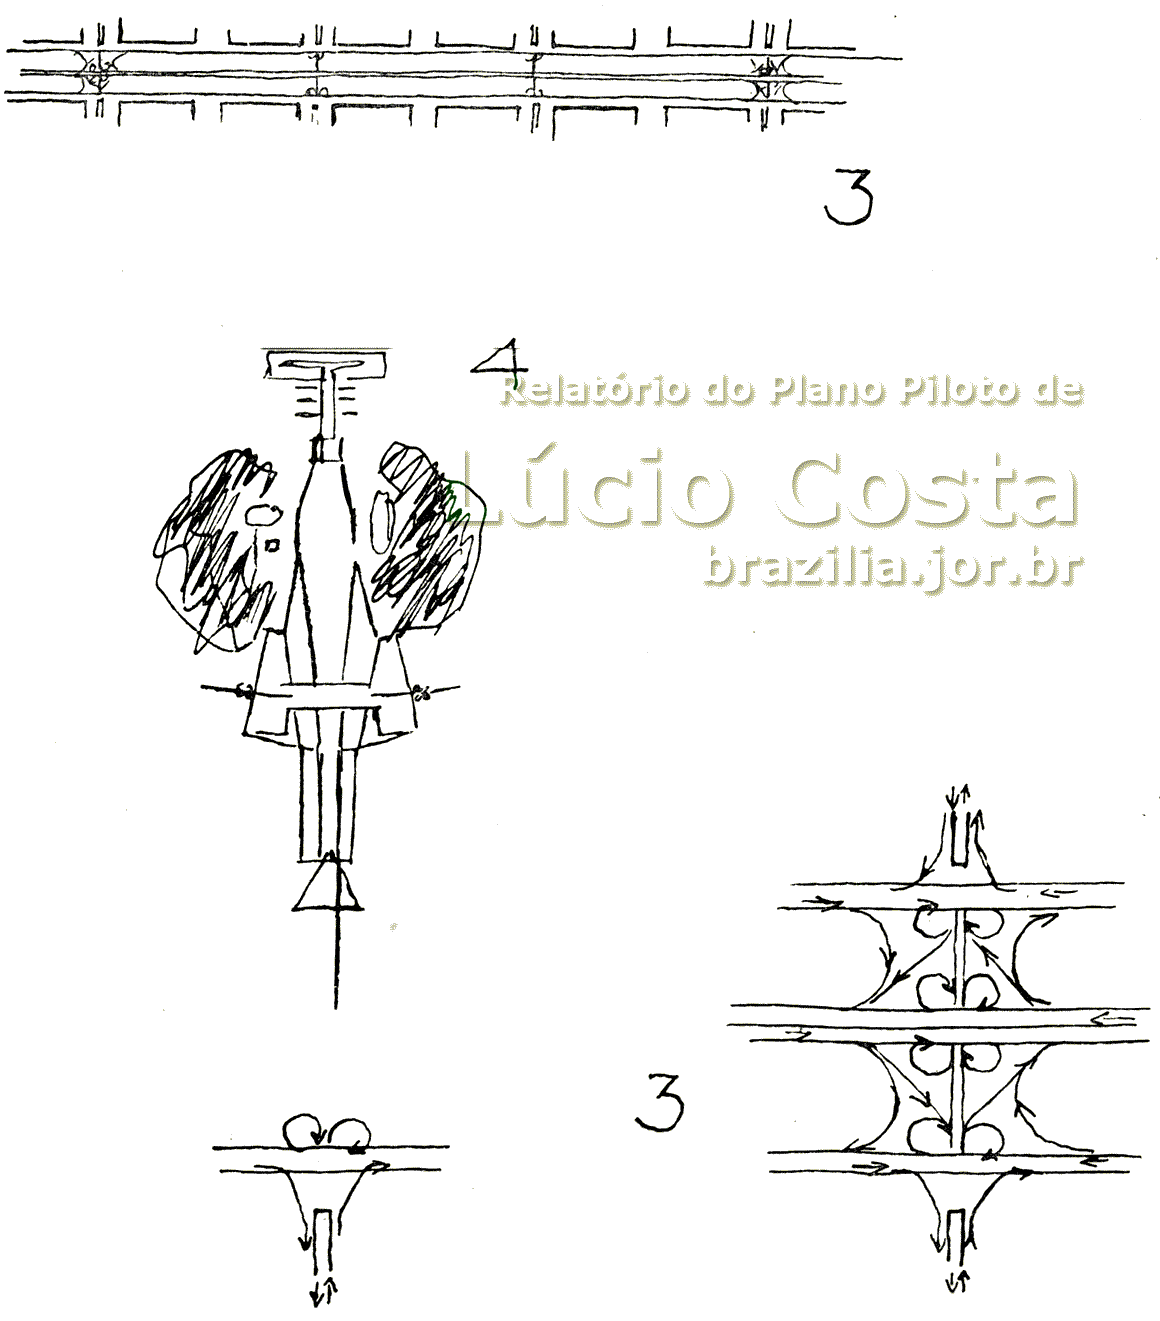 Croquis nº 3 e 4 do Plano Piloto de Lúcio Costa para a construção de Brasília